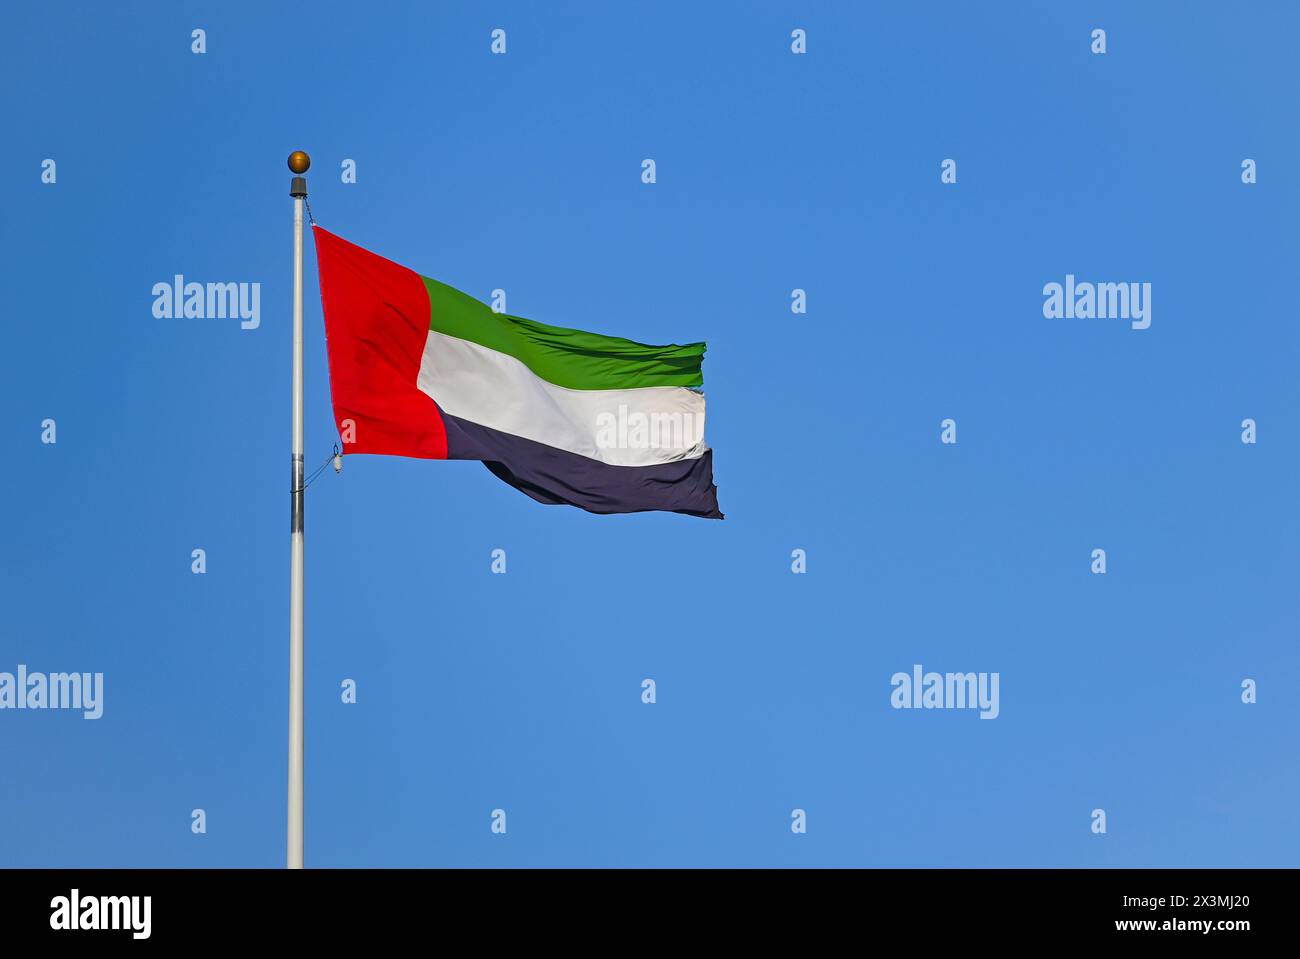 Flag of United Arab Emirates against blue sky Stock Photo